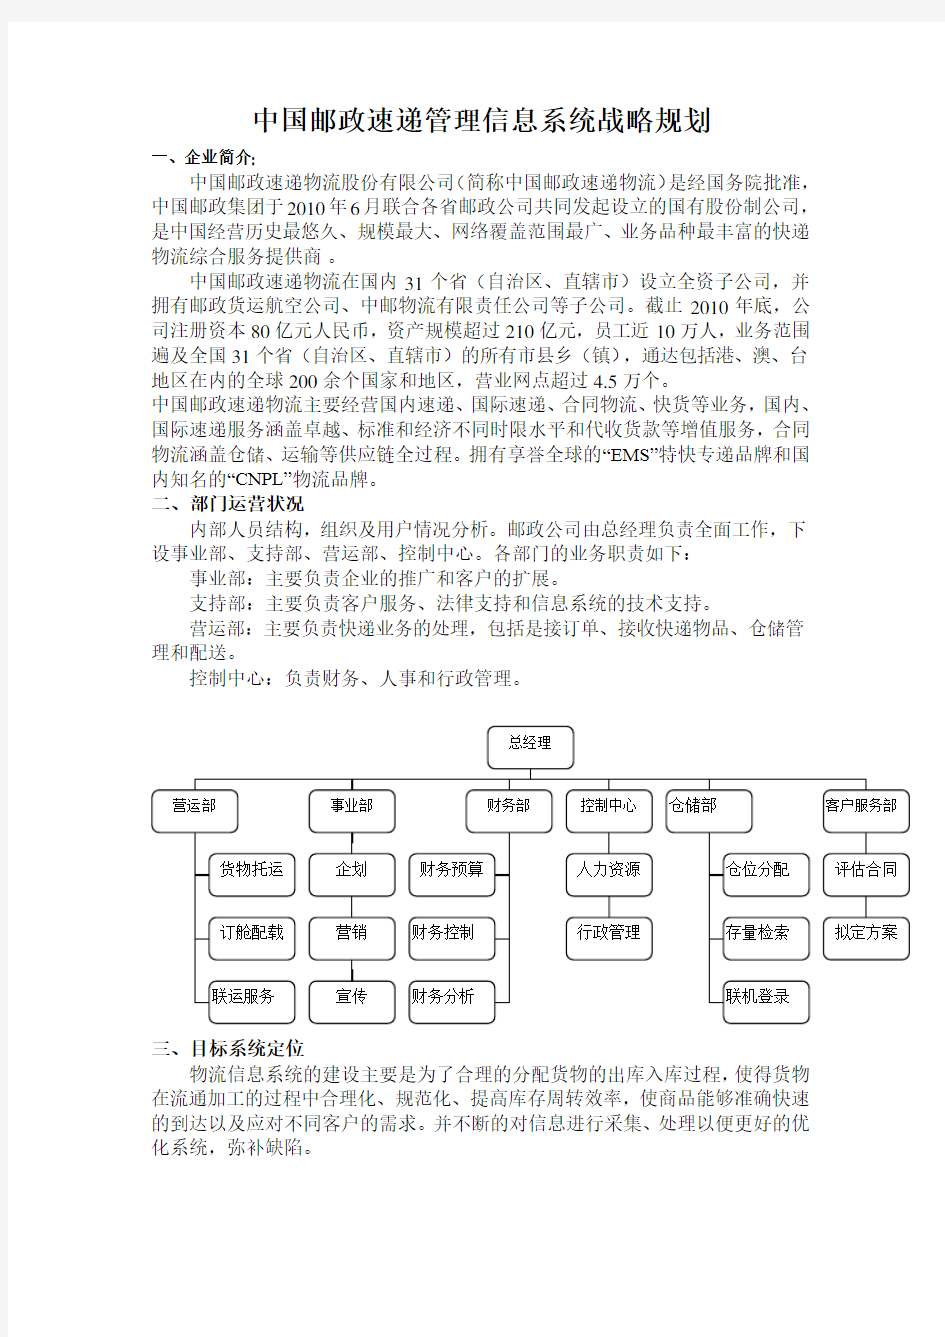 中国邮政速递管理信息管理系统